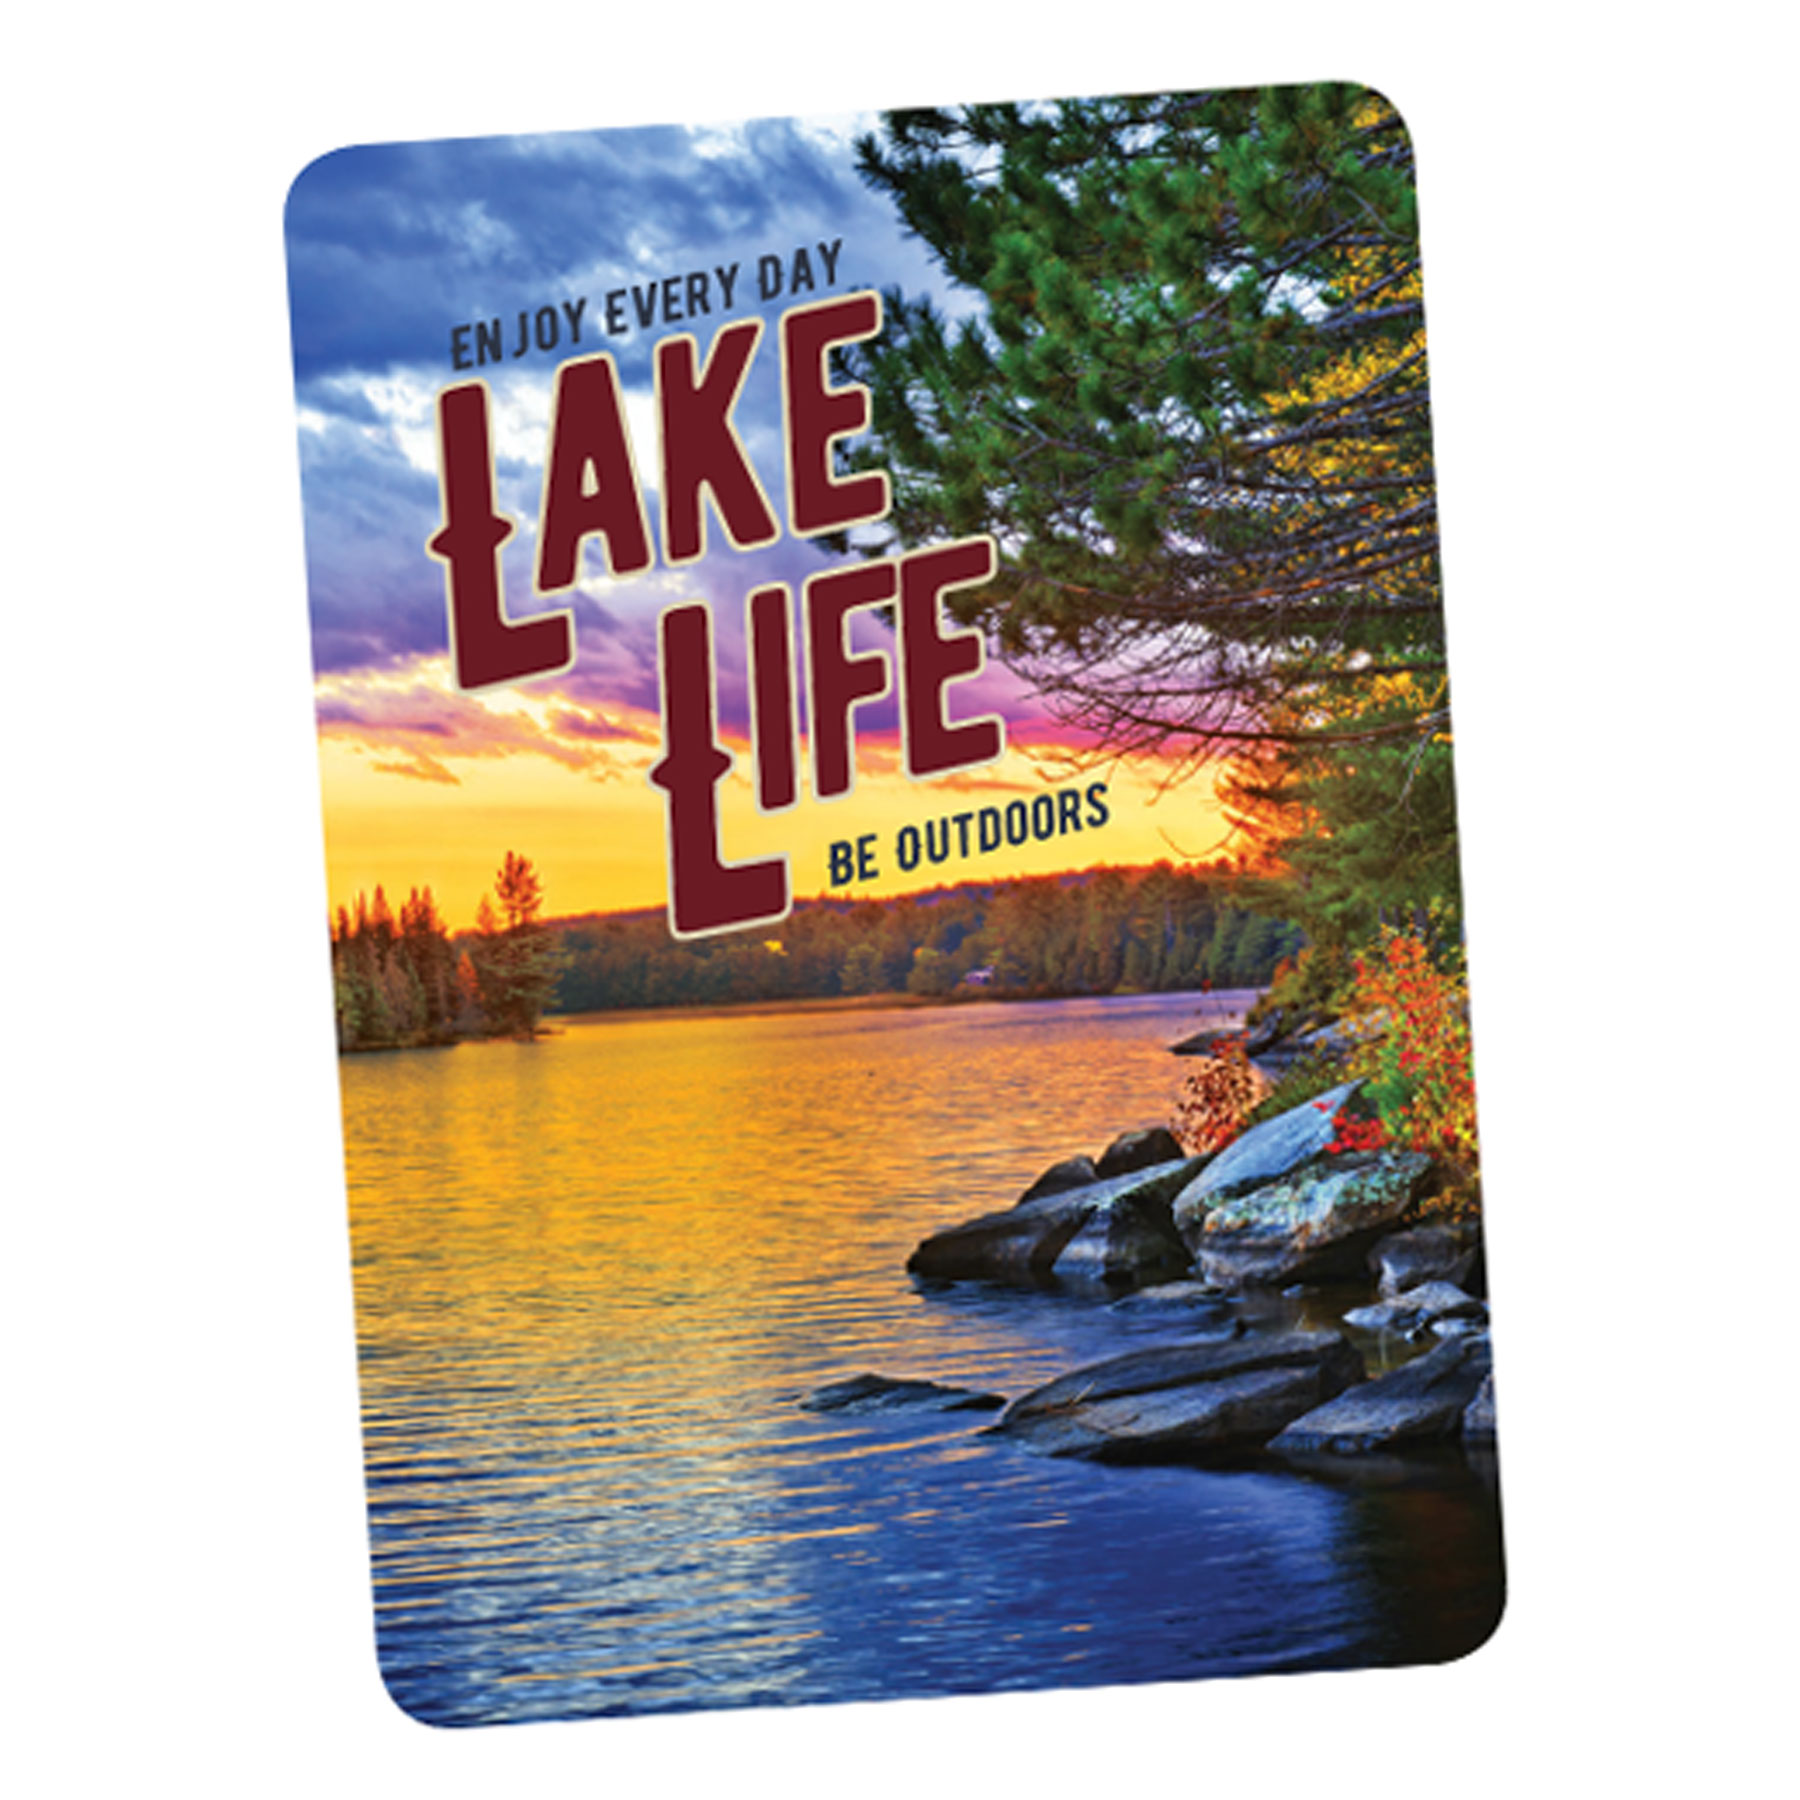 LAKE LIFE PLAYING CARDS